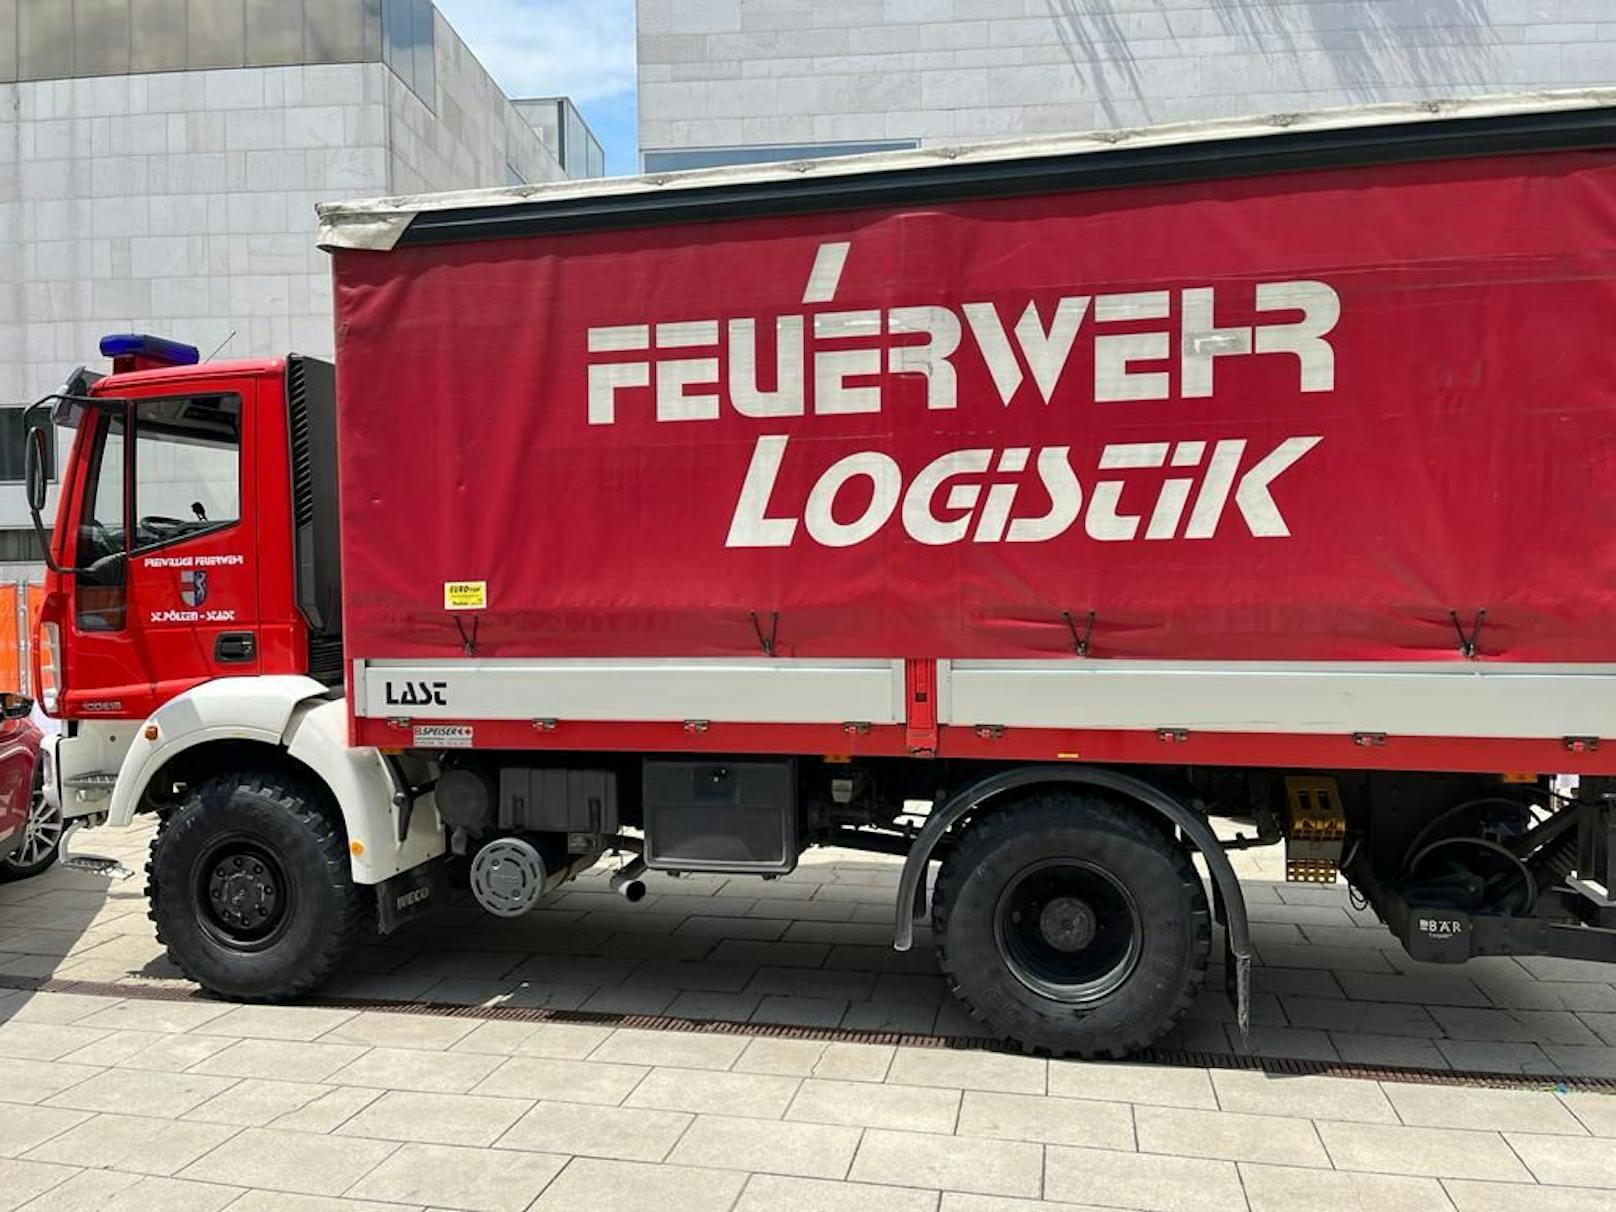 Ein Logistik-Fahrzeug der Feuerwehr